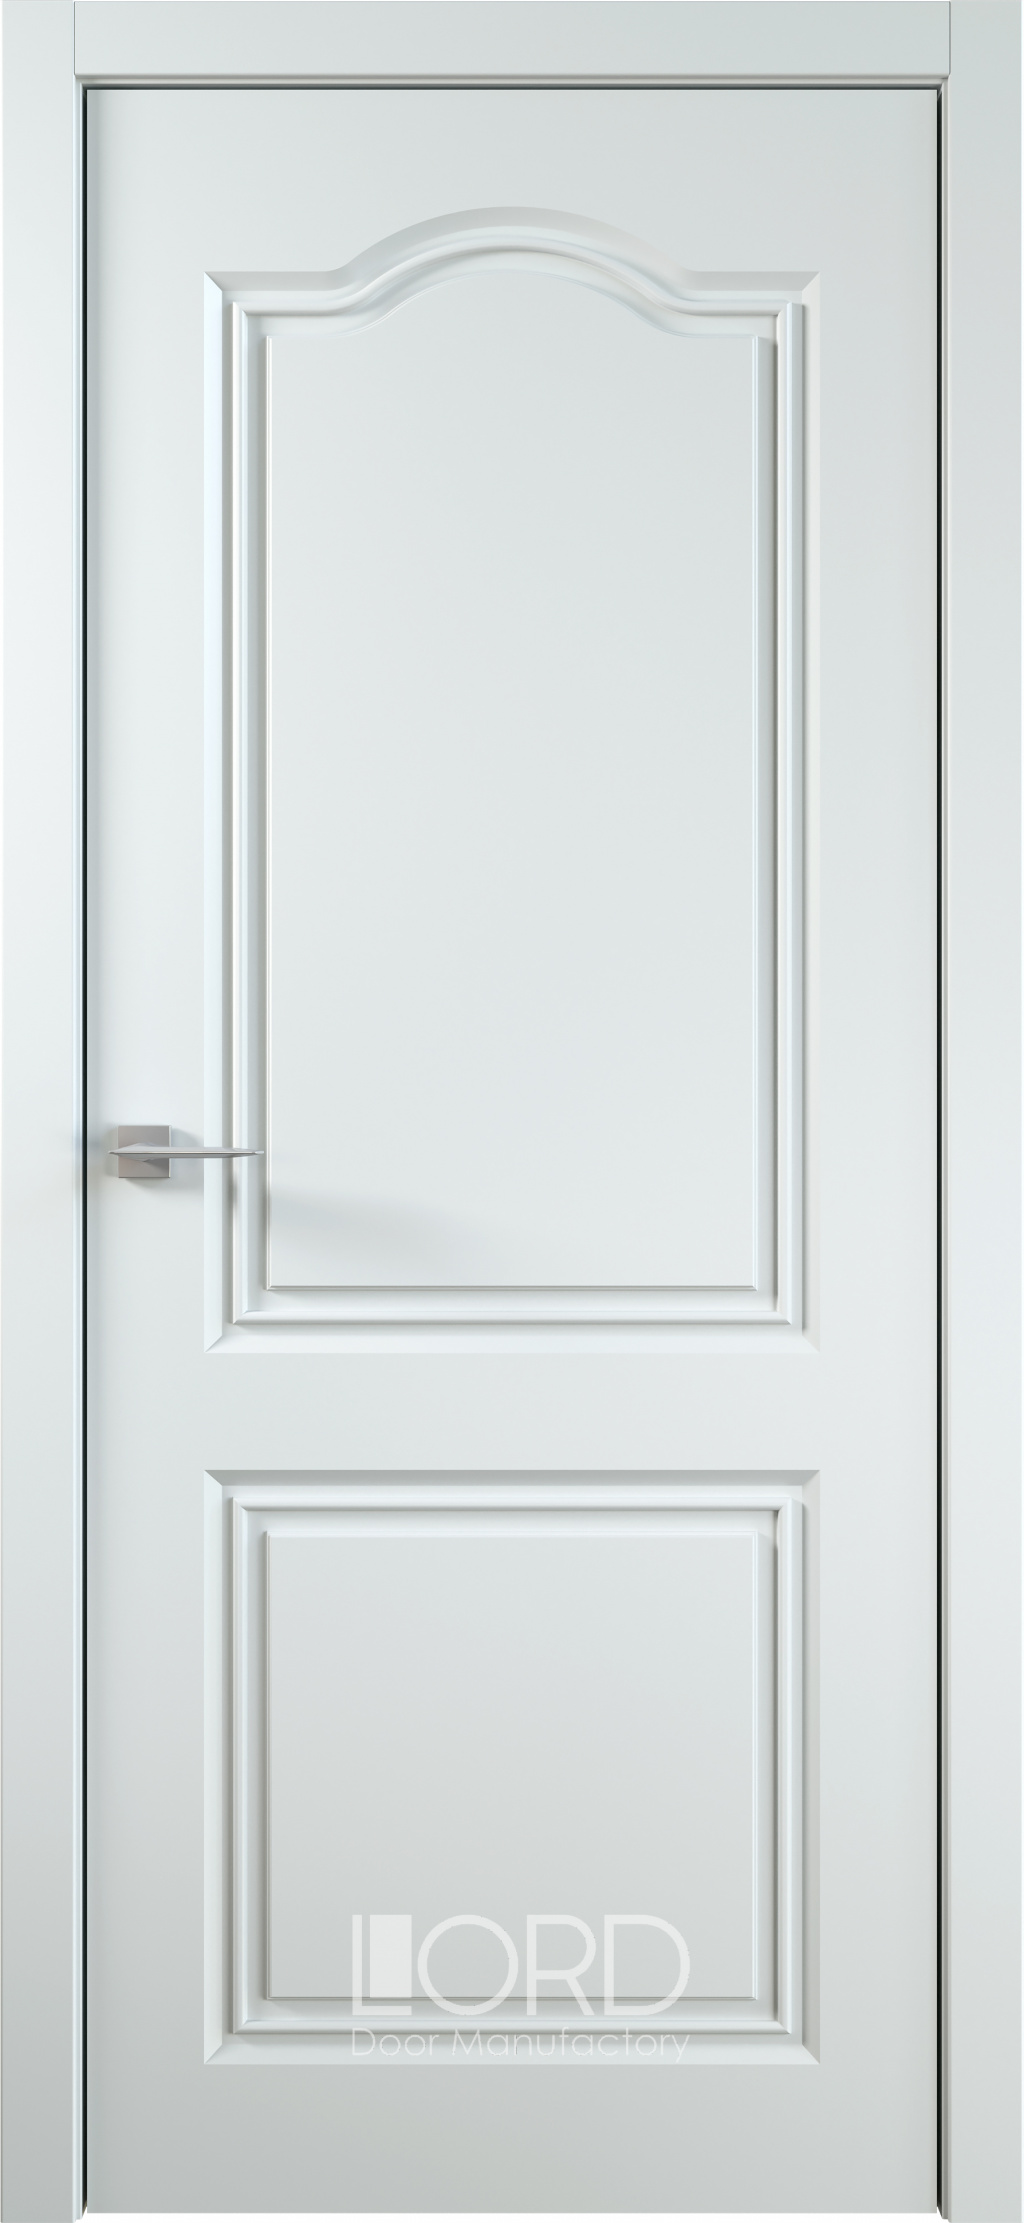 Лорд Межкомнатная дверь Ренессанс 6 ДГ, арт. 22992 - фото №1